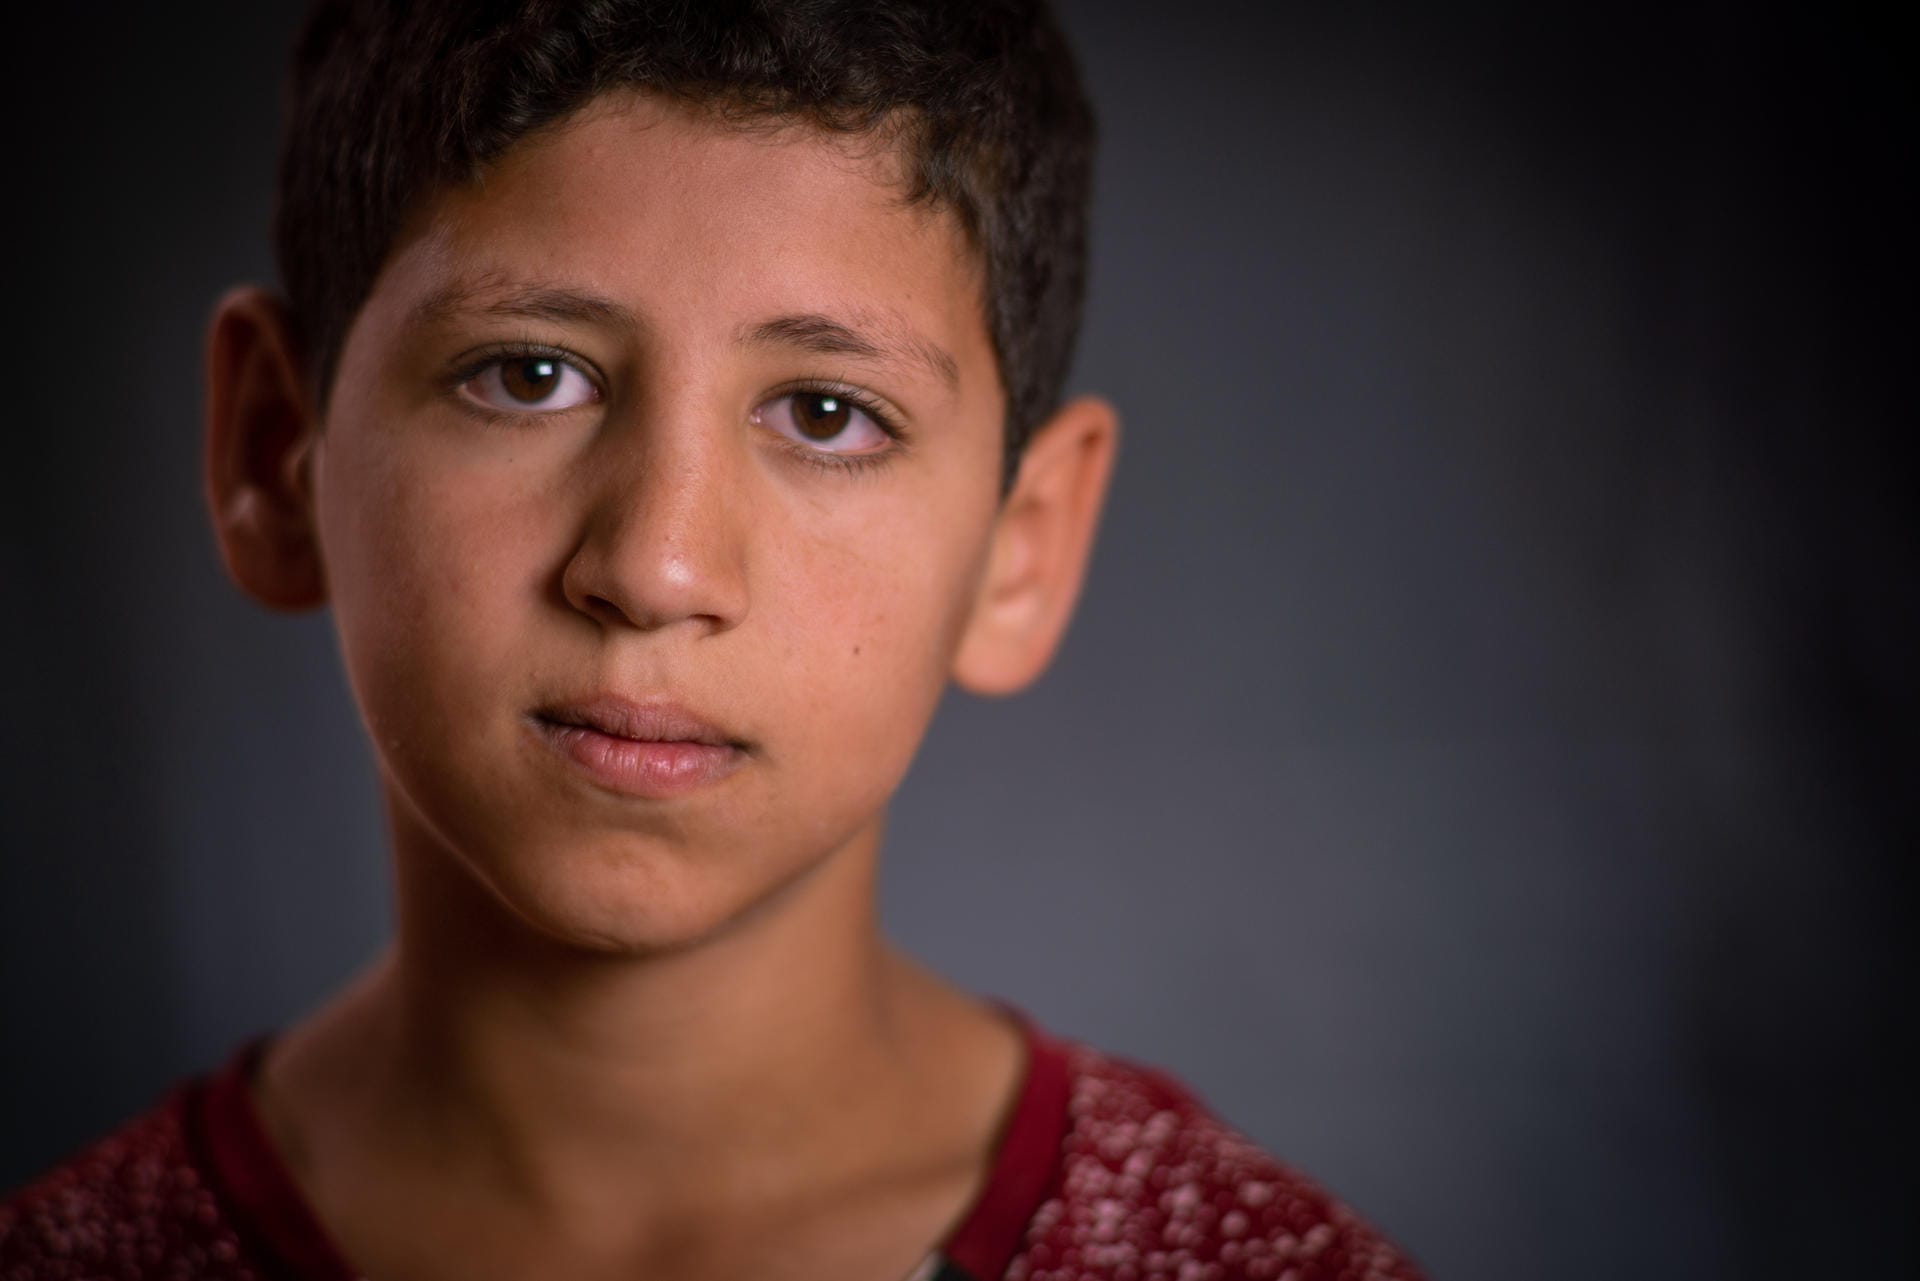 Jetzt geht Qusai im Flüchtlingslager zur Schule: "Ich werde diesen Schulranzen für immer behalten. Ich werde meinen Kindern sagen, dass mein Vater ihn mir gegeben hat und ich ihn all die Jahre aufbewahrt habe, um ihn euch zu zeigen."